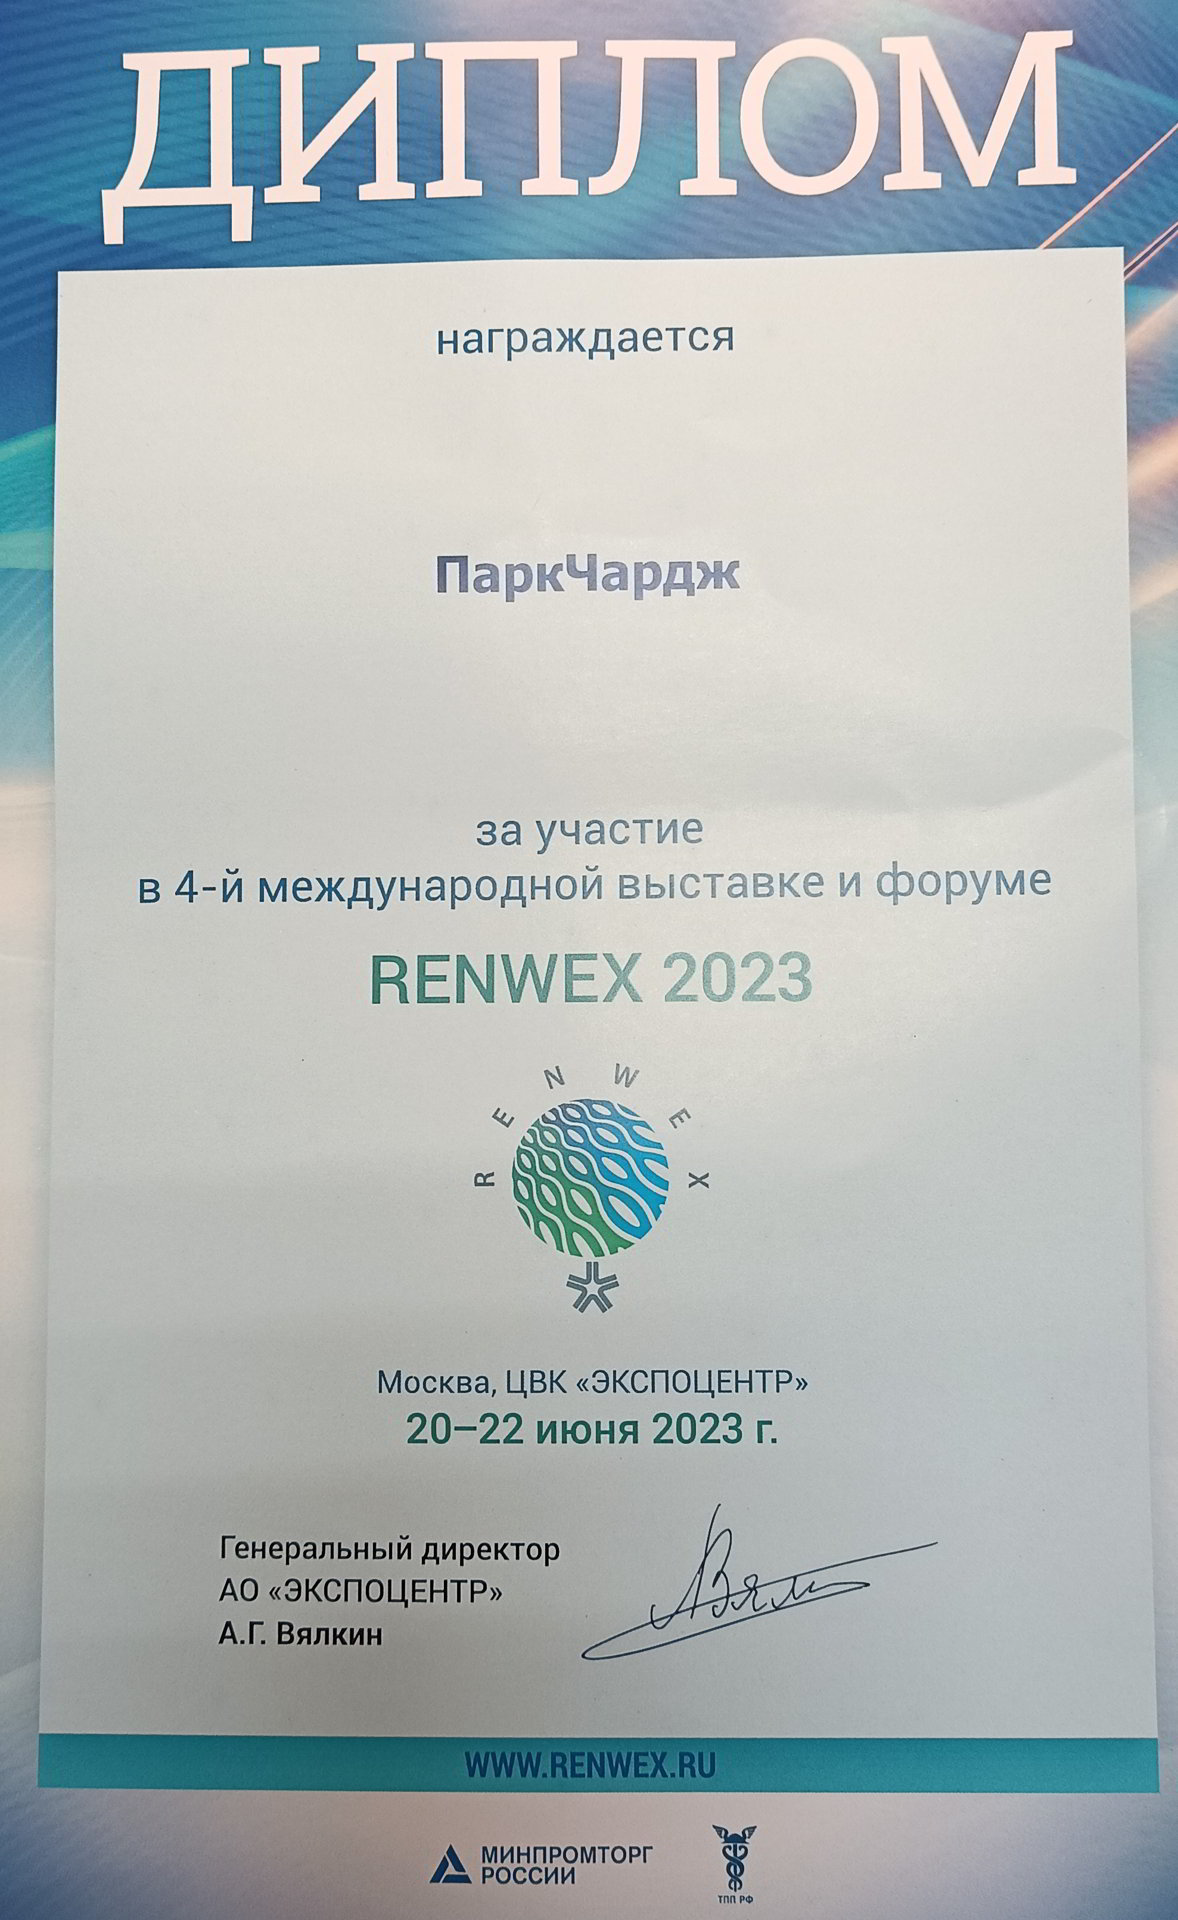 ParkCharge участвовала 20-22.06 в 4-й международной выставке и форуме RENWEX 2023